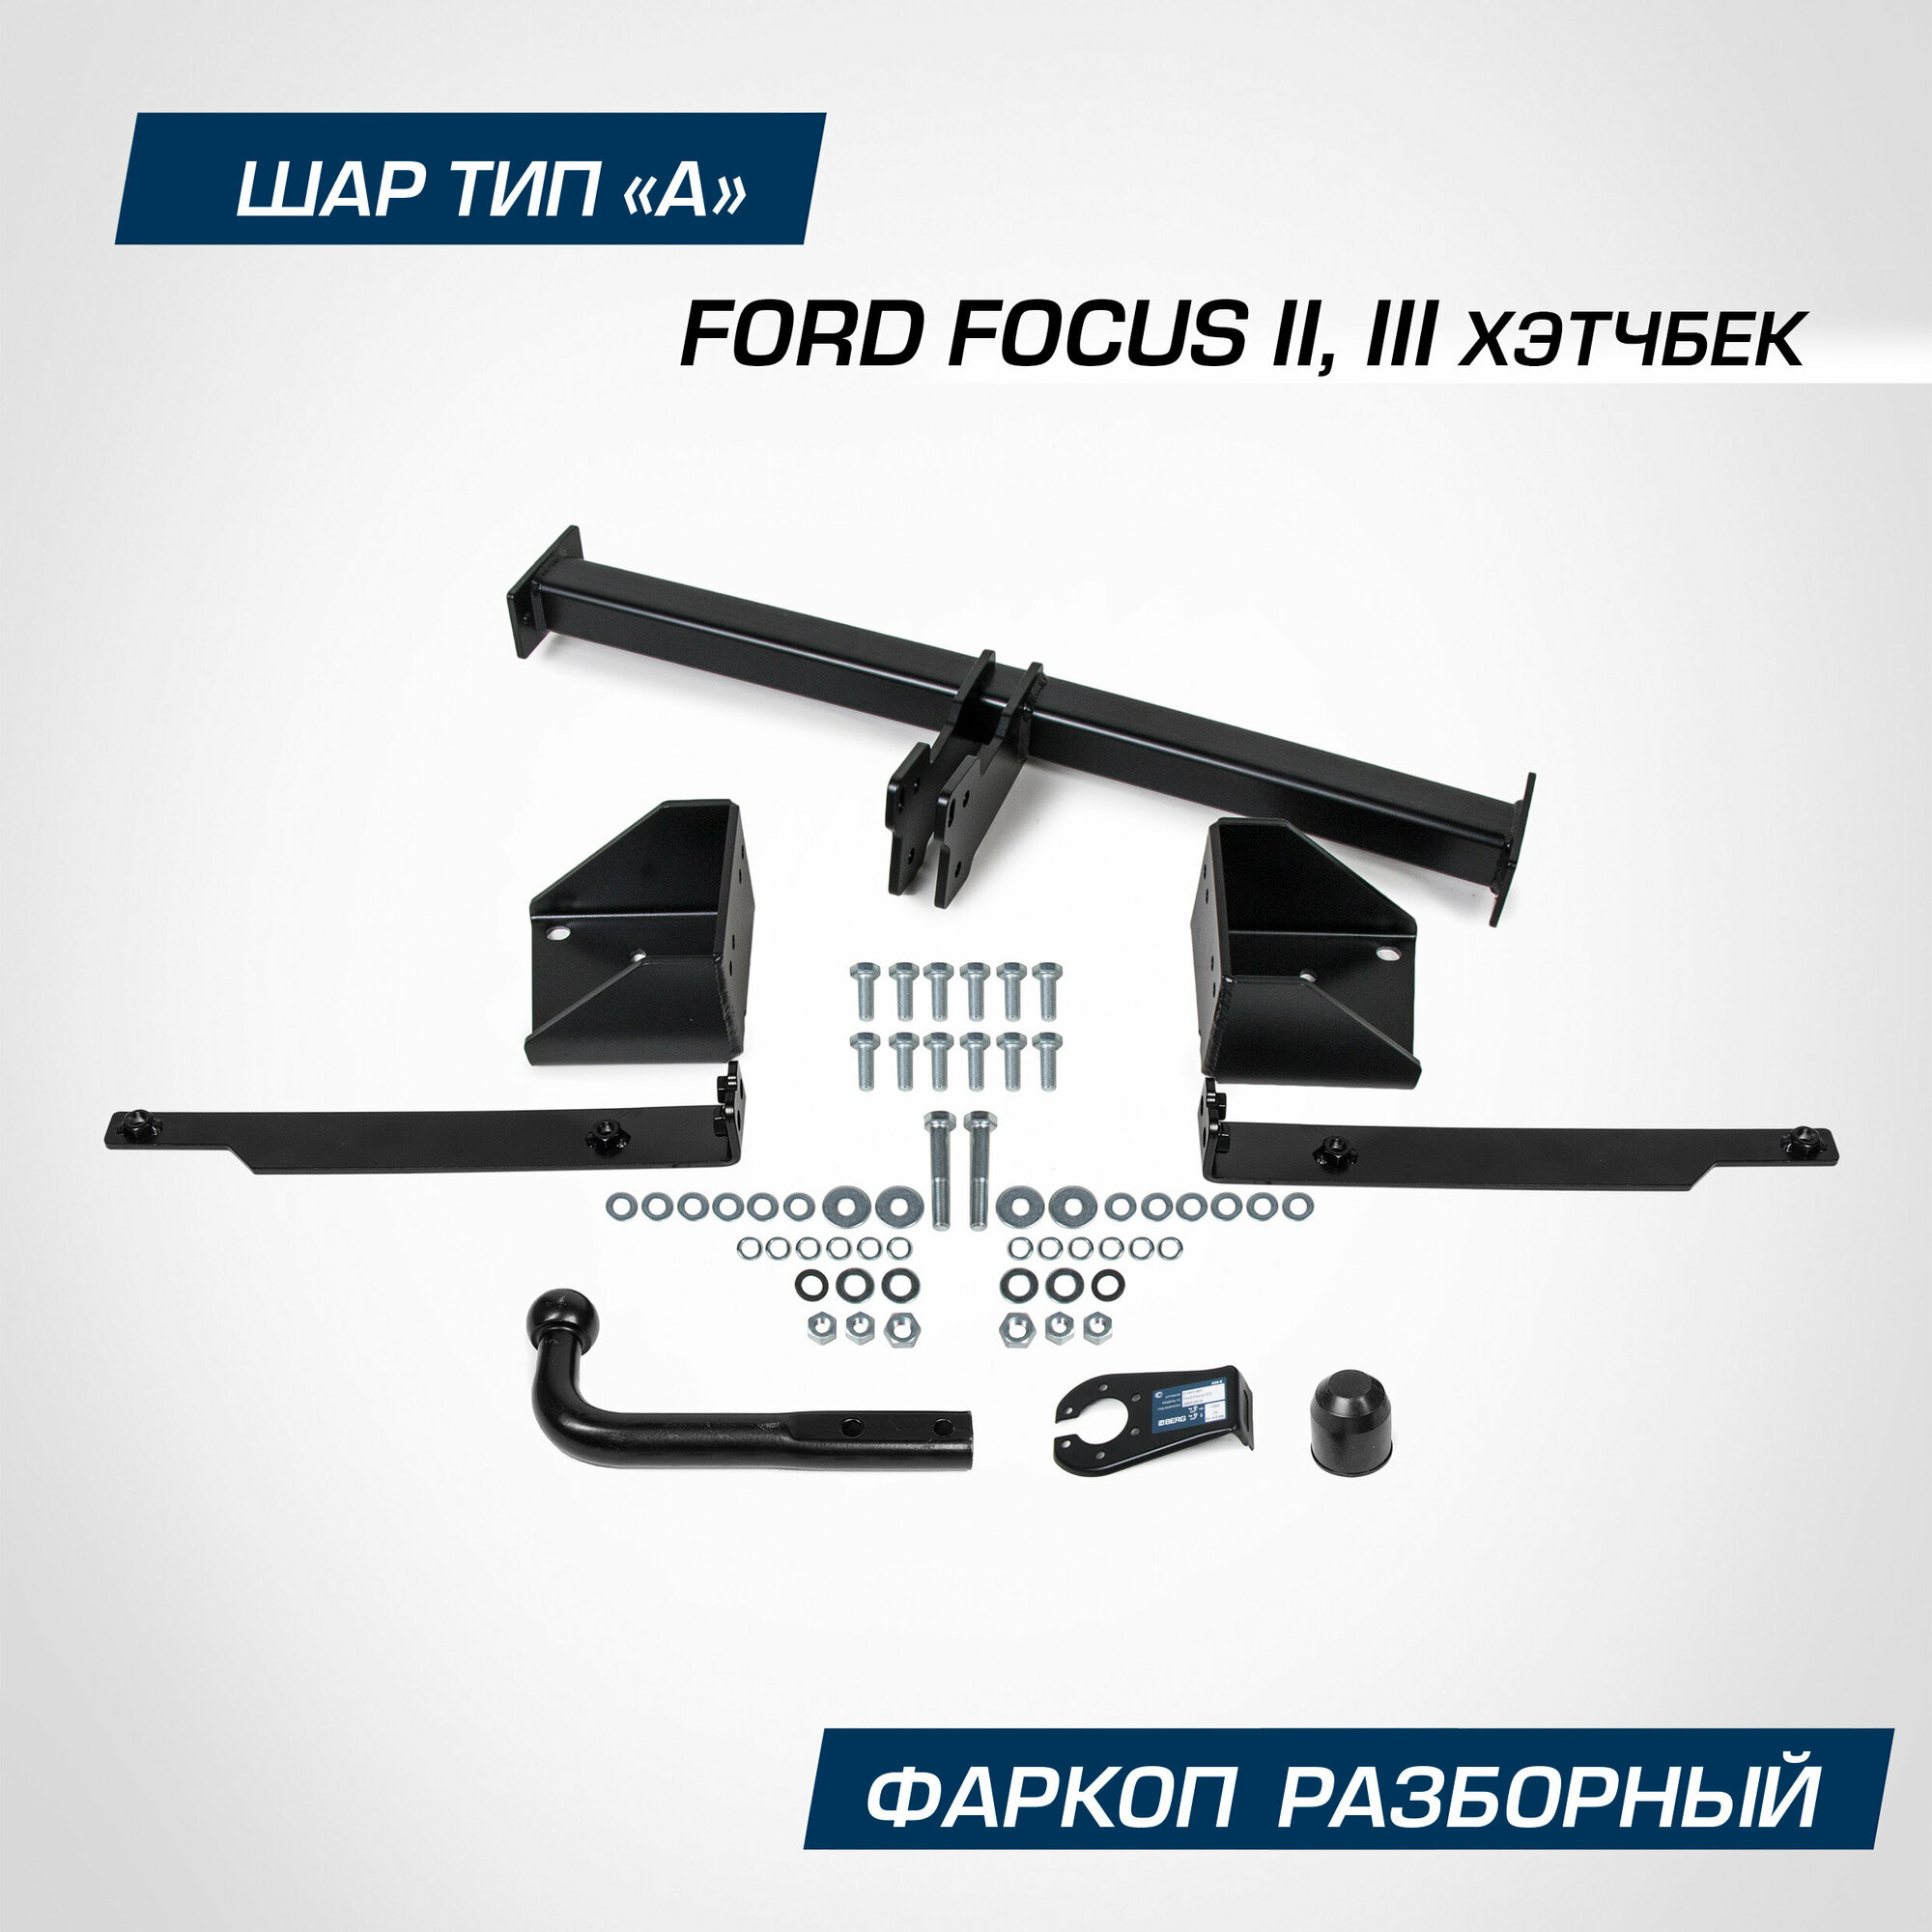 Фаркоп Berg для Ford Focus хэтчбек II III поколение 2005-2019 шар А 1500/75 кг F.1812.001